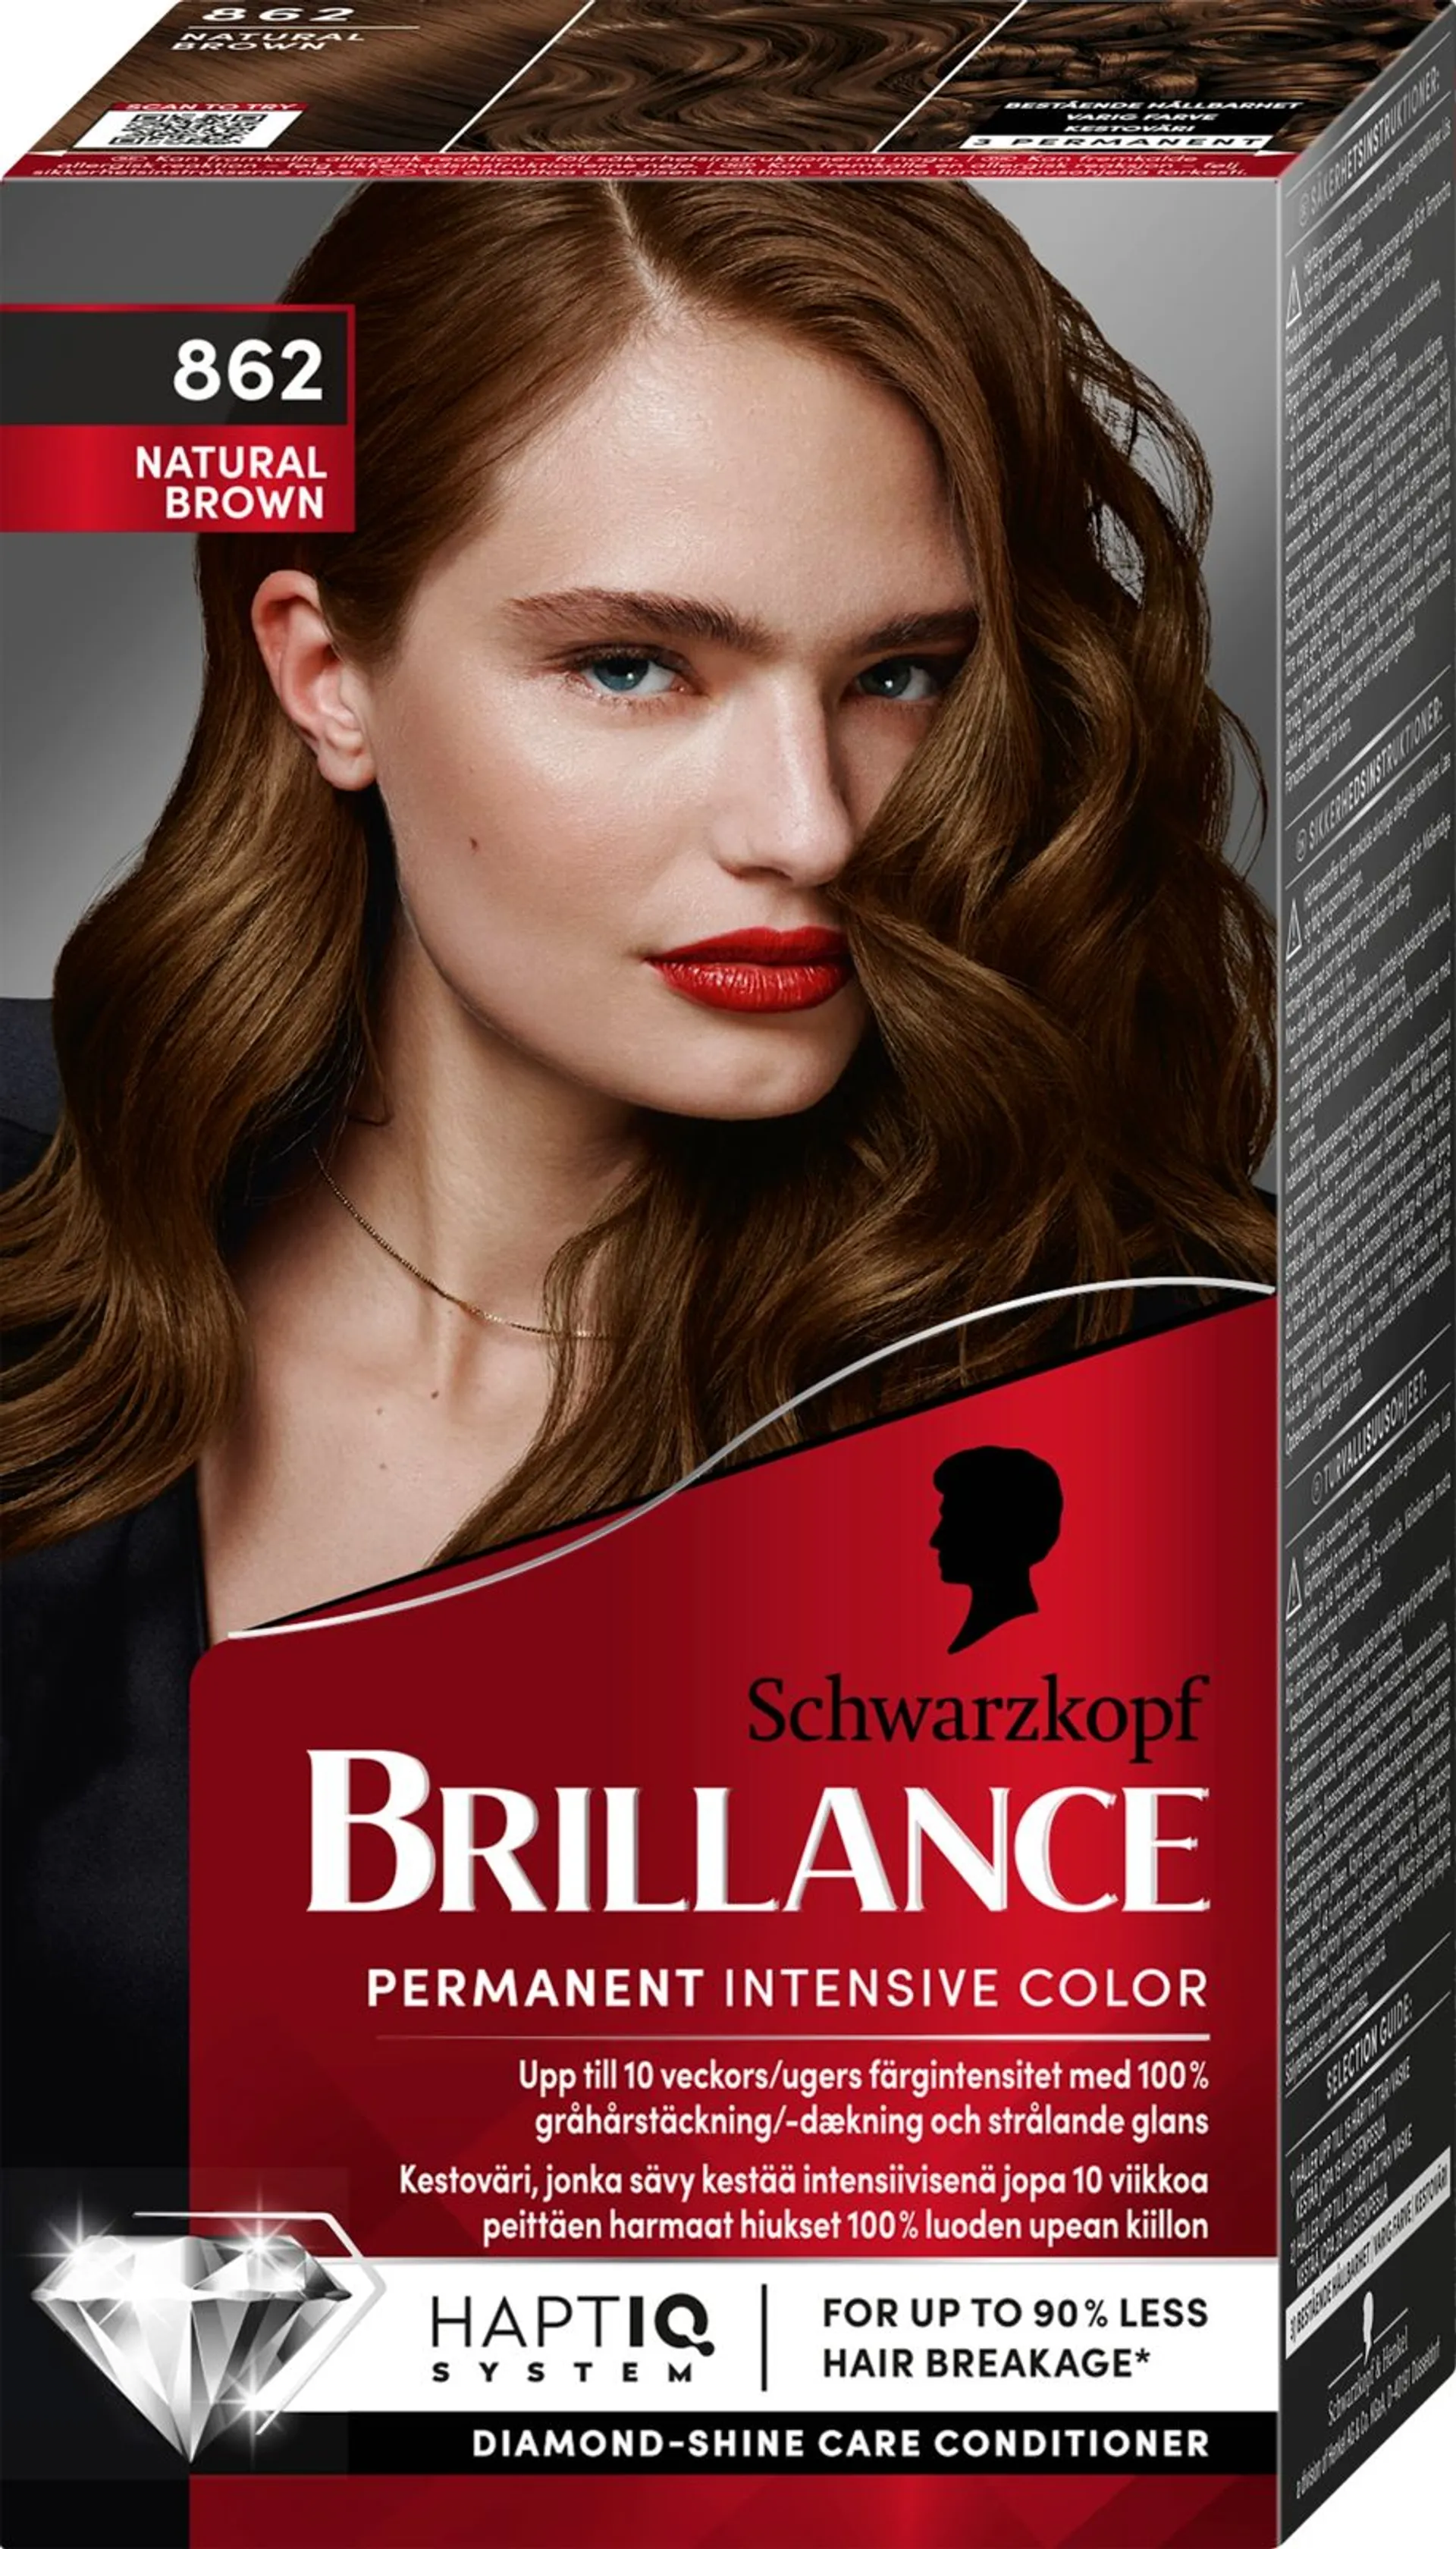 Schwarzkopf Brillance 862 Natural Brown hiusväri 1 kpl - 1